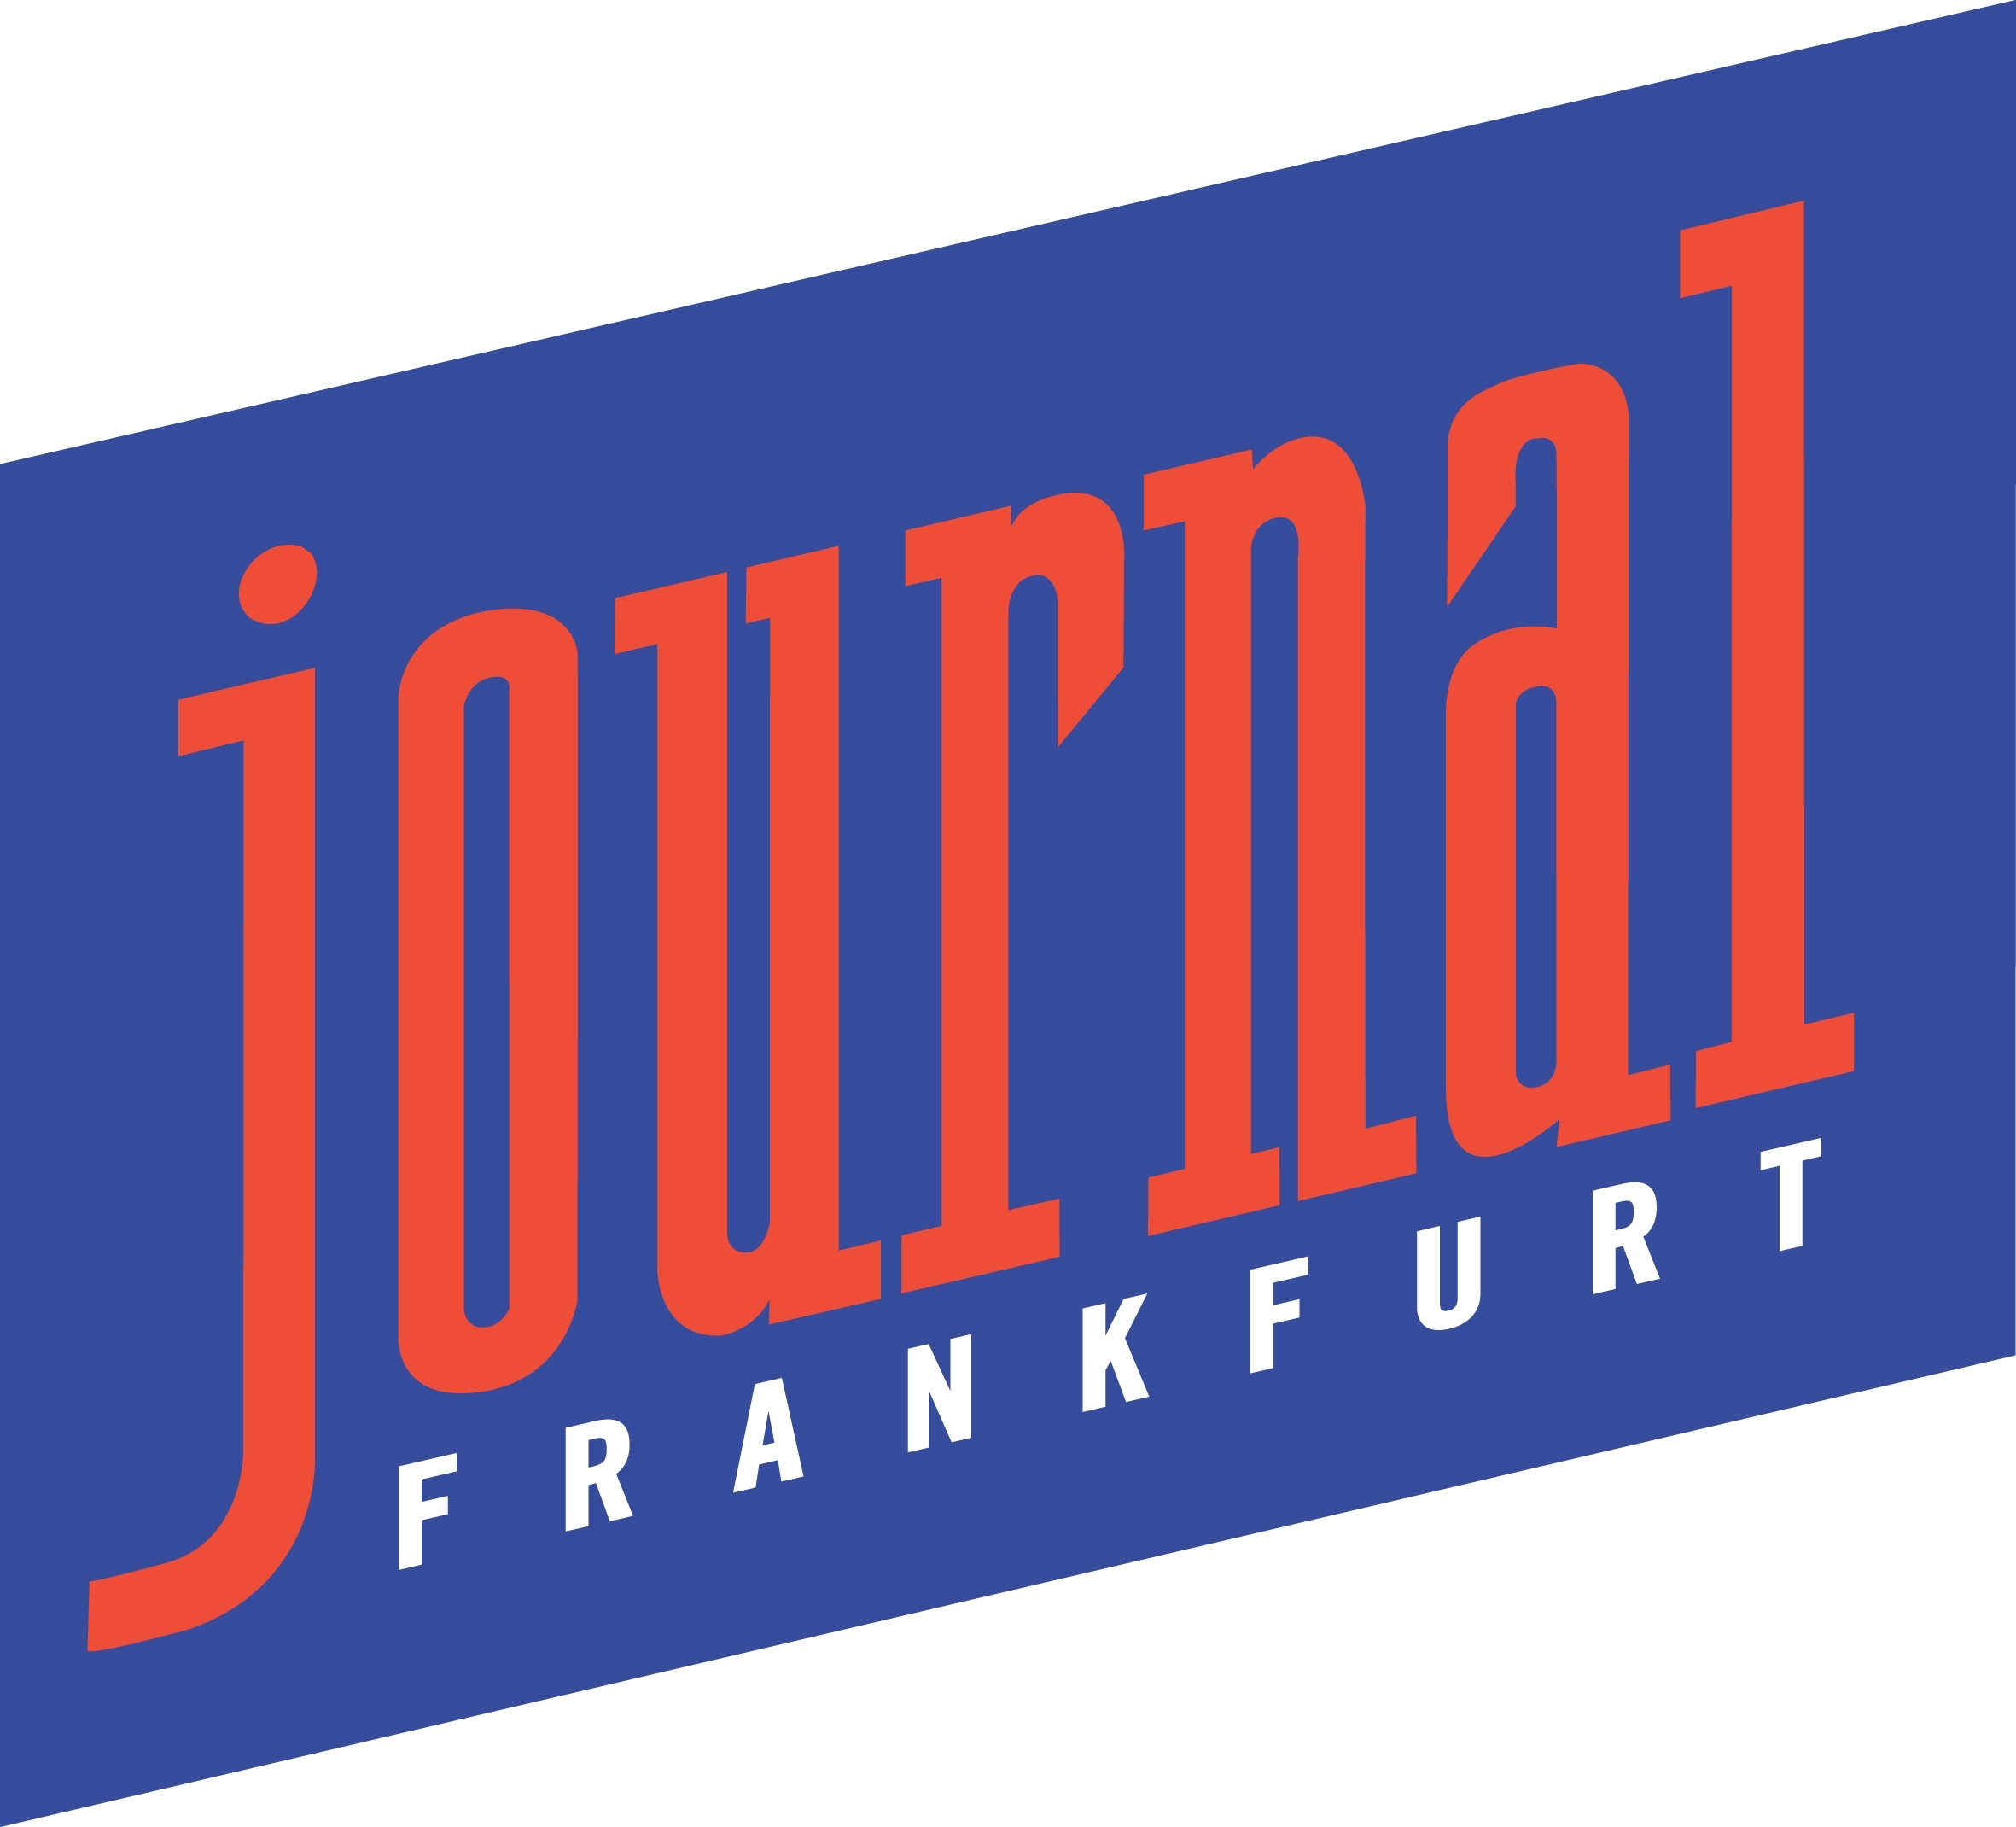 http://www.journal-frankfurt.de/